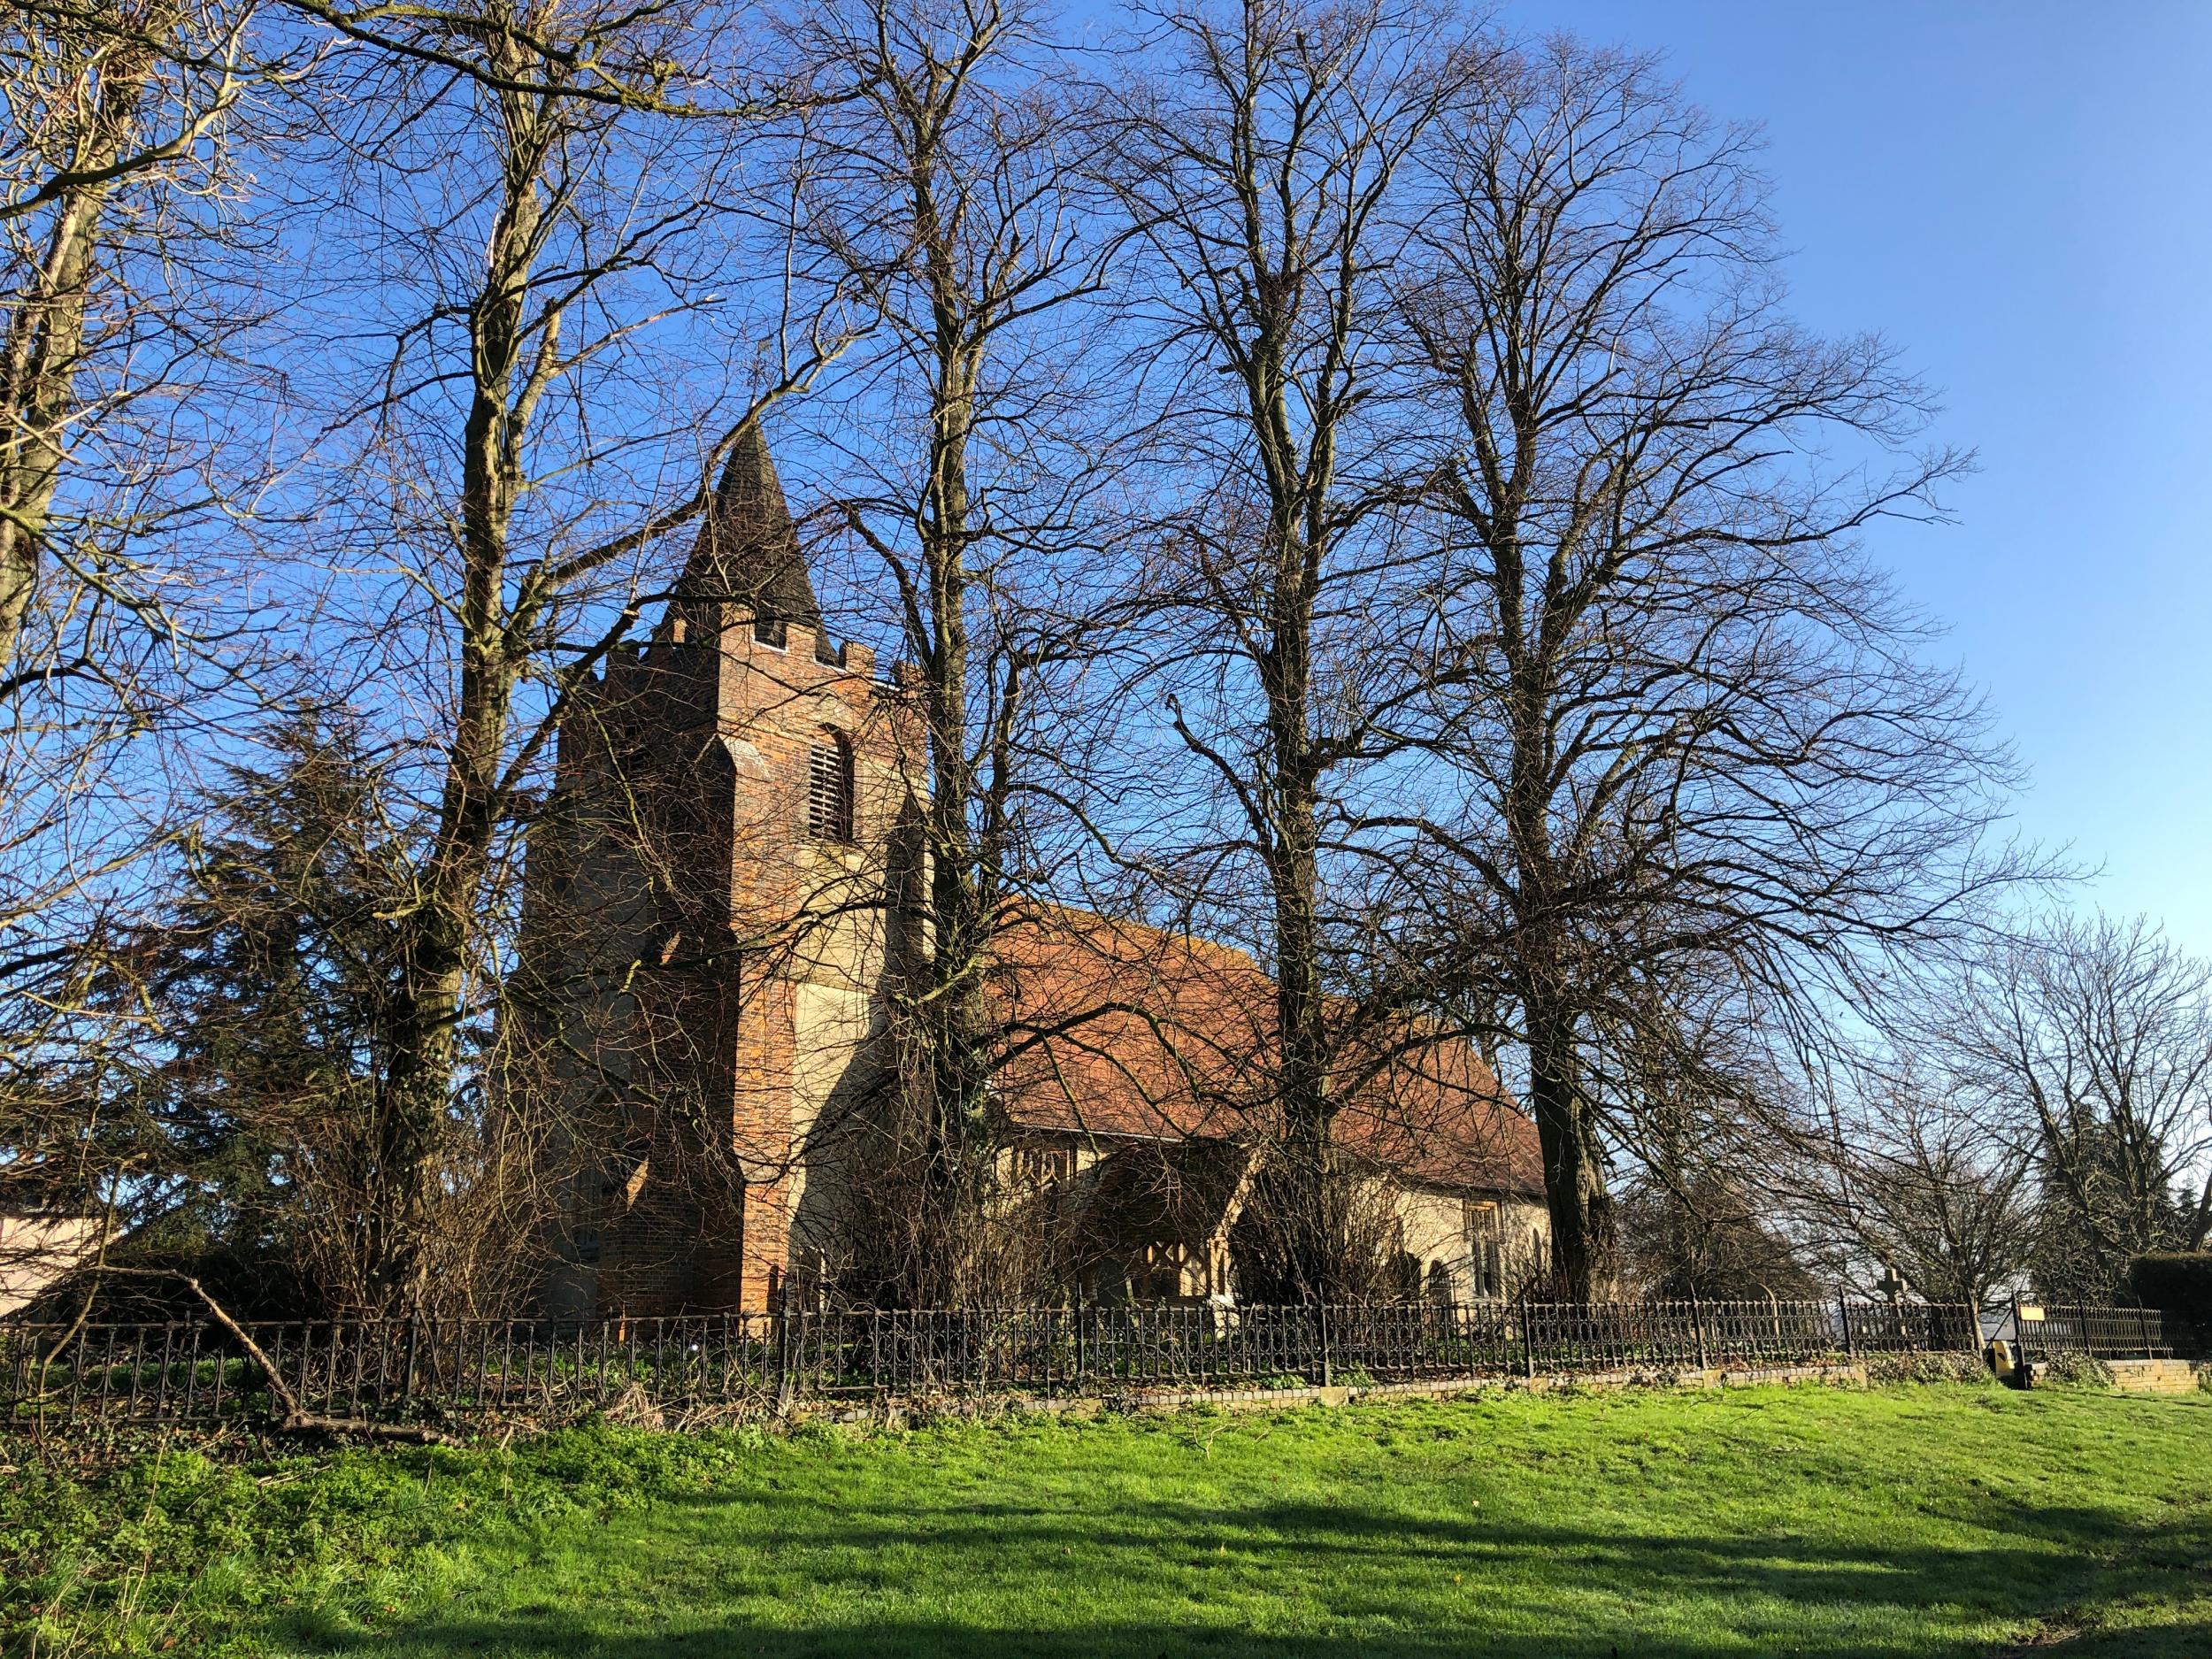 Historic churches abound in Essex